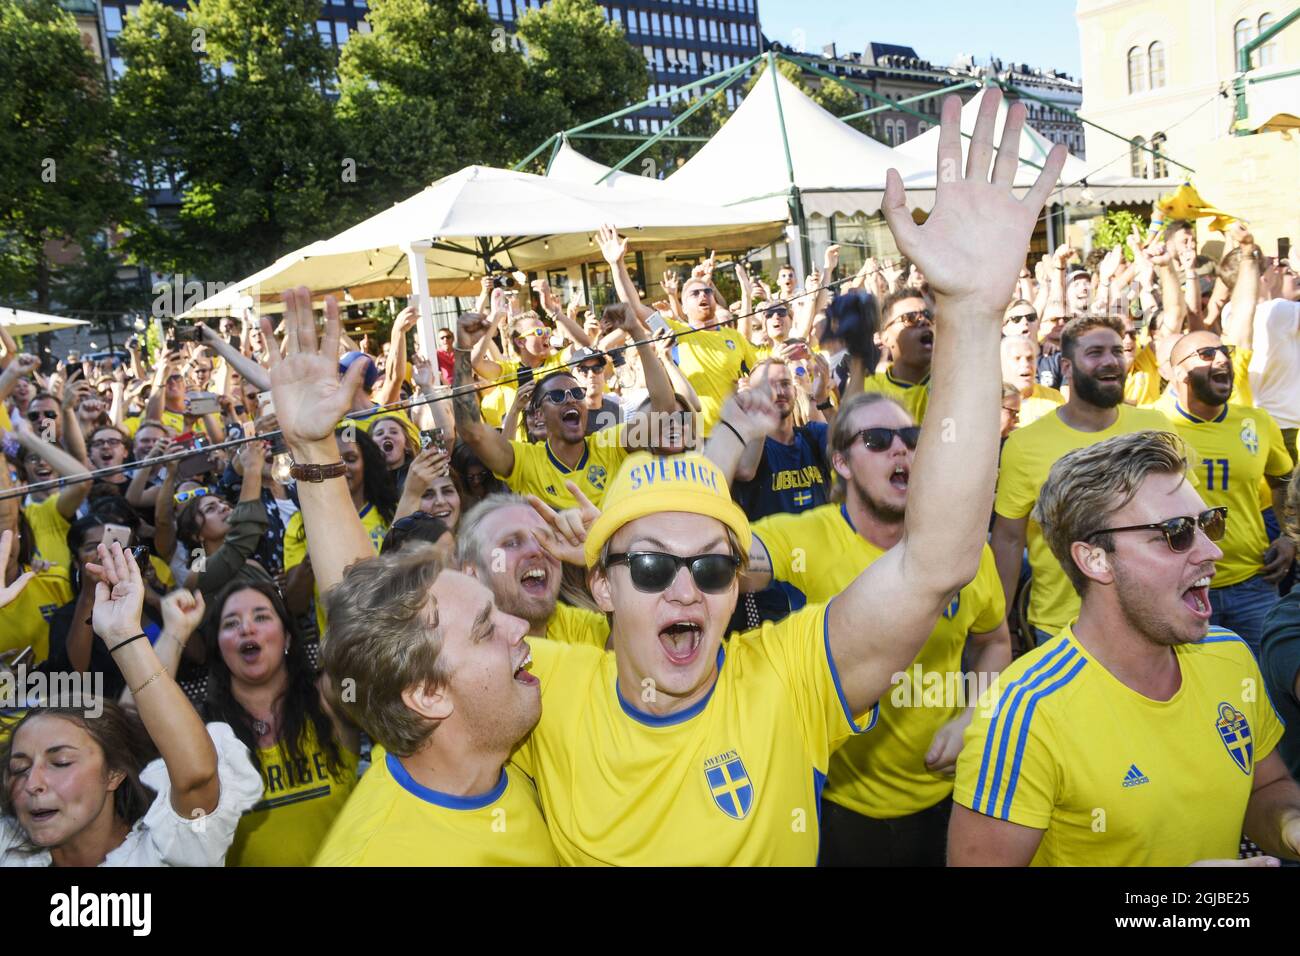 Schwedische Fußballfans feiern, nachdem Schweden beim Fußballspiel der Gruppe F in Russland 2018 gegen Mexiko gewonnen hat, als sie das Spiel am 27. Juni 2018 auf einer großen Leinwand im Freien in Norra Bantorget im Zentrum von Stockholm, Schweden, ansehen. Foto: Fredrik Sandberg / TT / Code 10080 Stockfoto